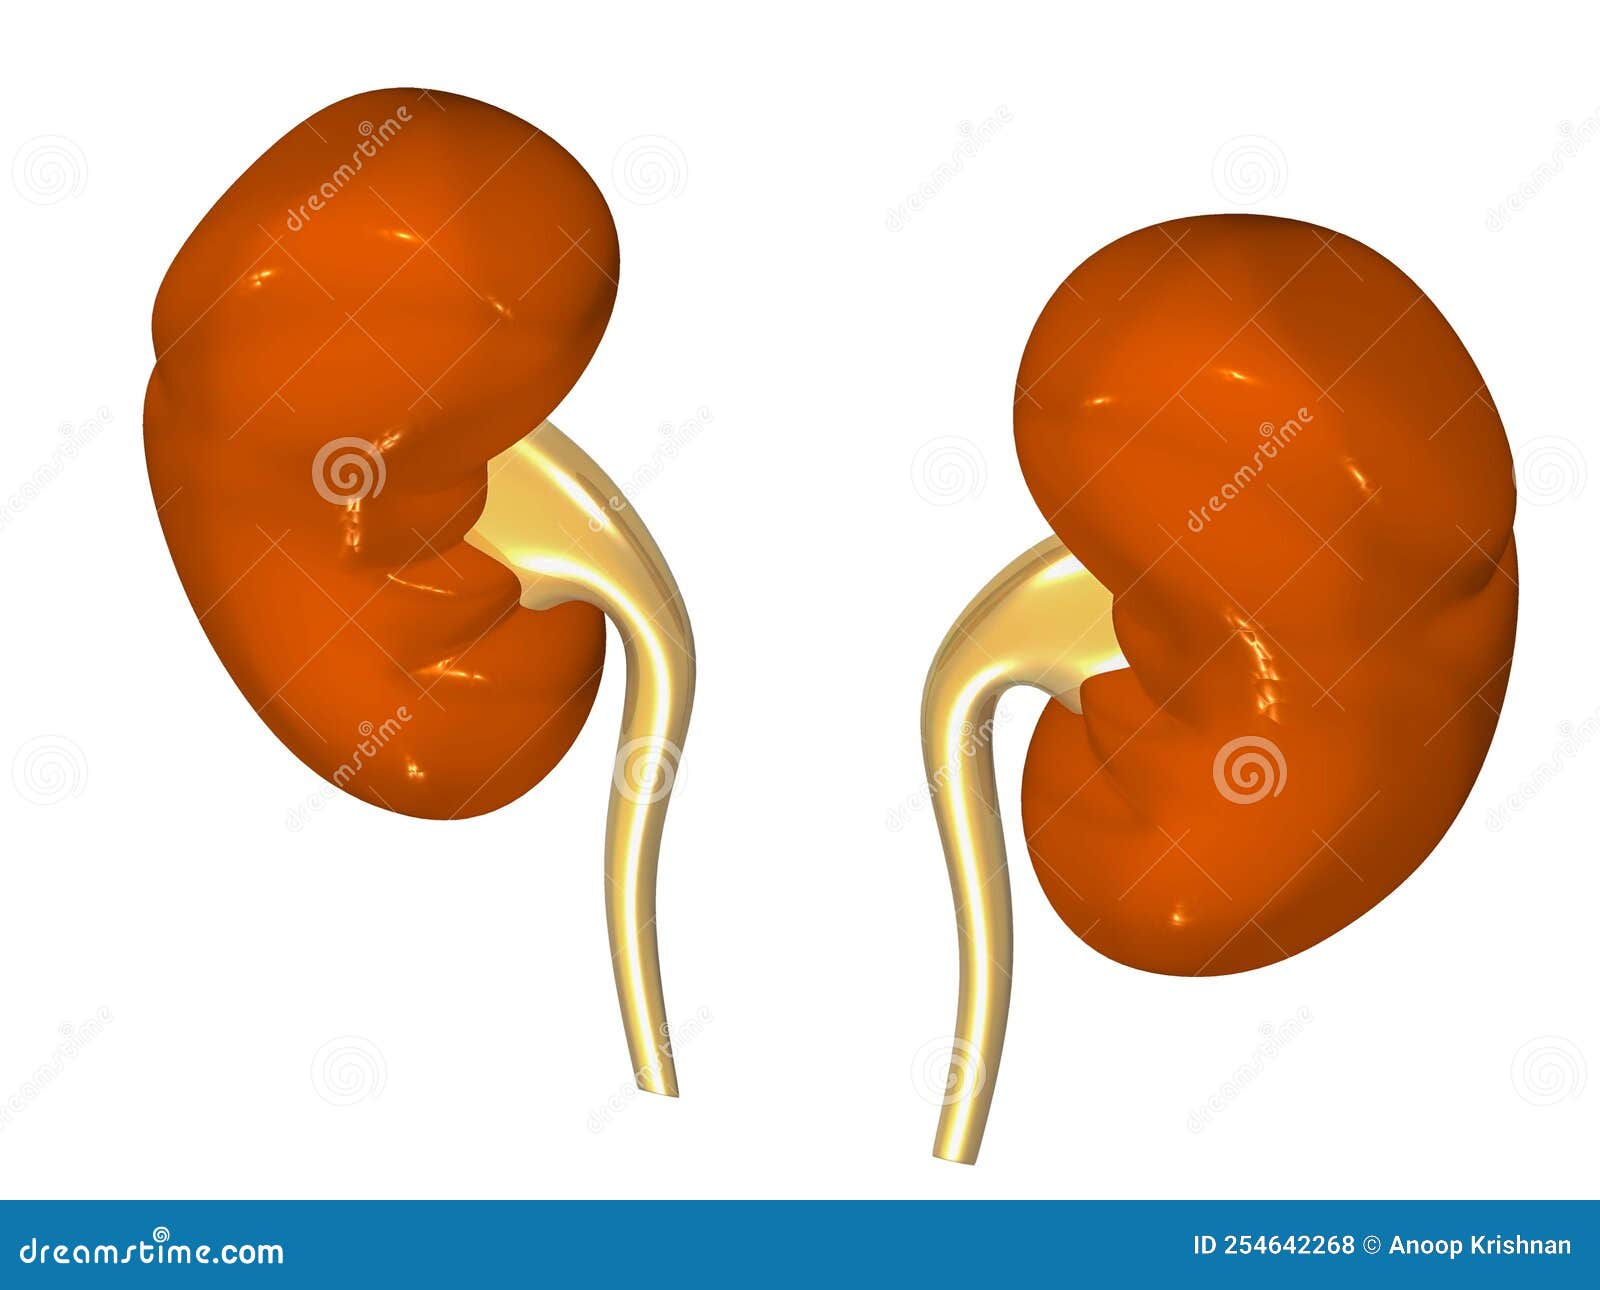 Human kidneys anatomy stock illustration. Illustration of fibrous ...